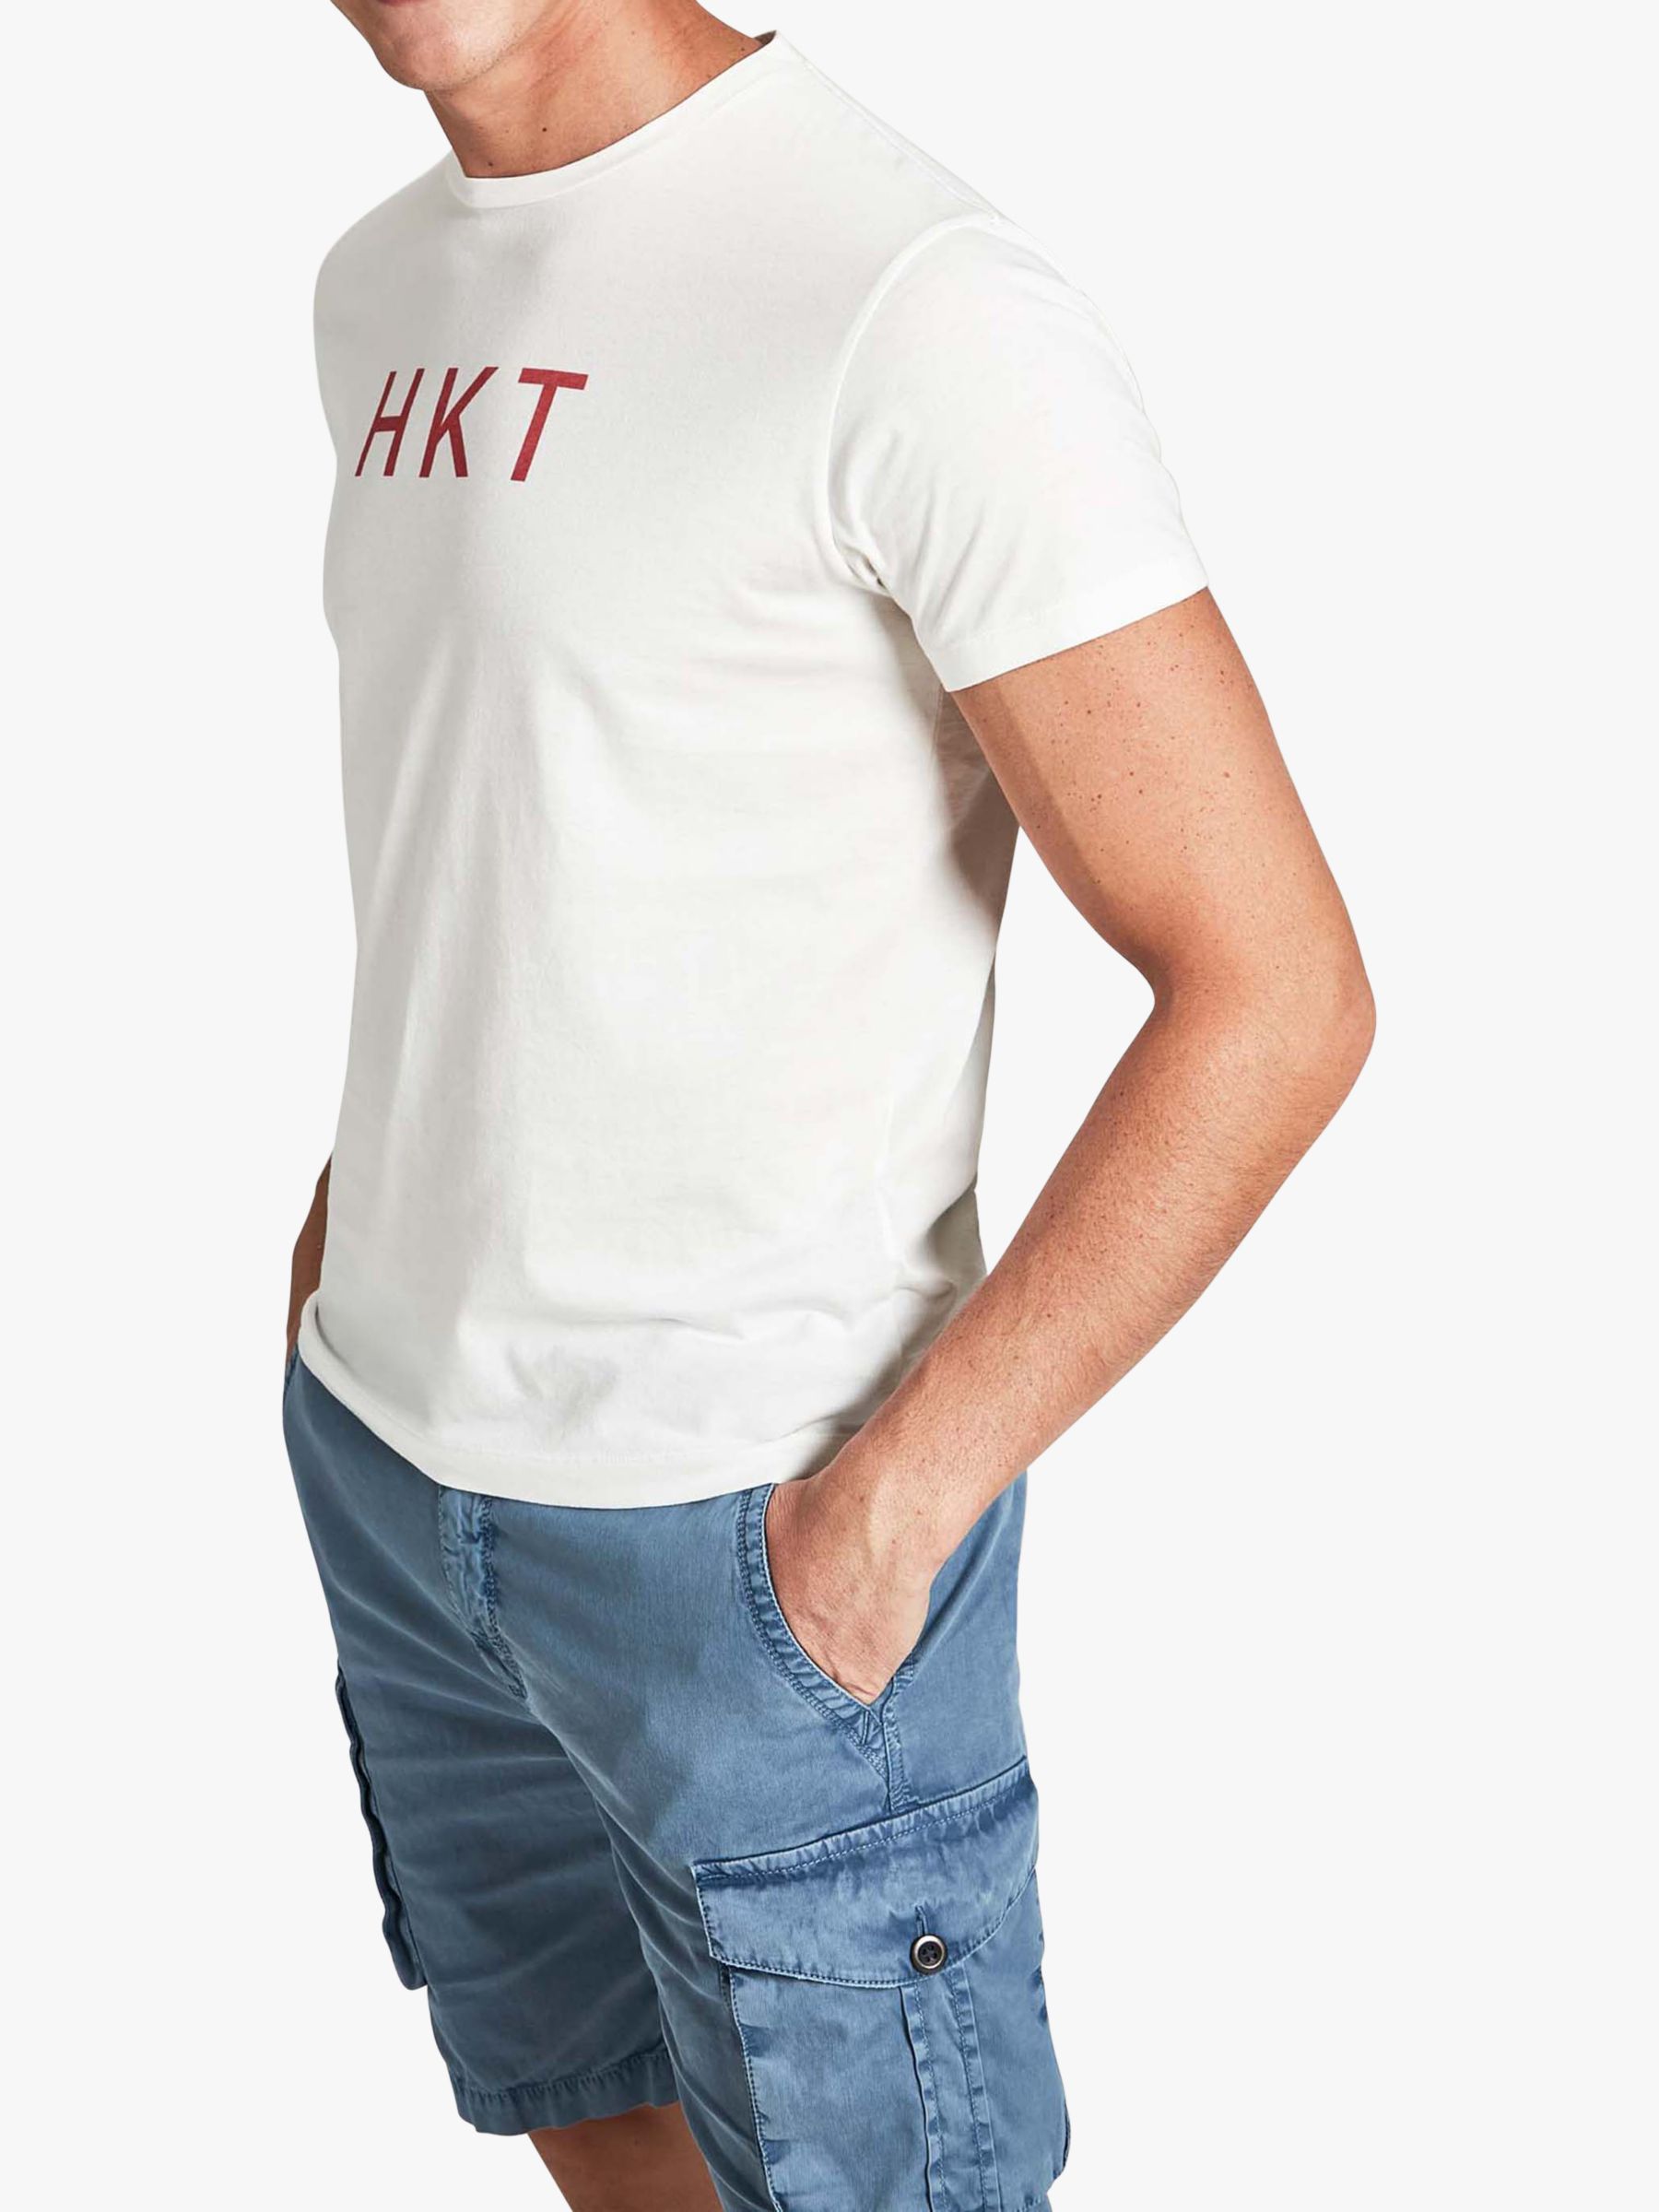 Hkt Logo Single T Shirt At John Lewis Partners